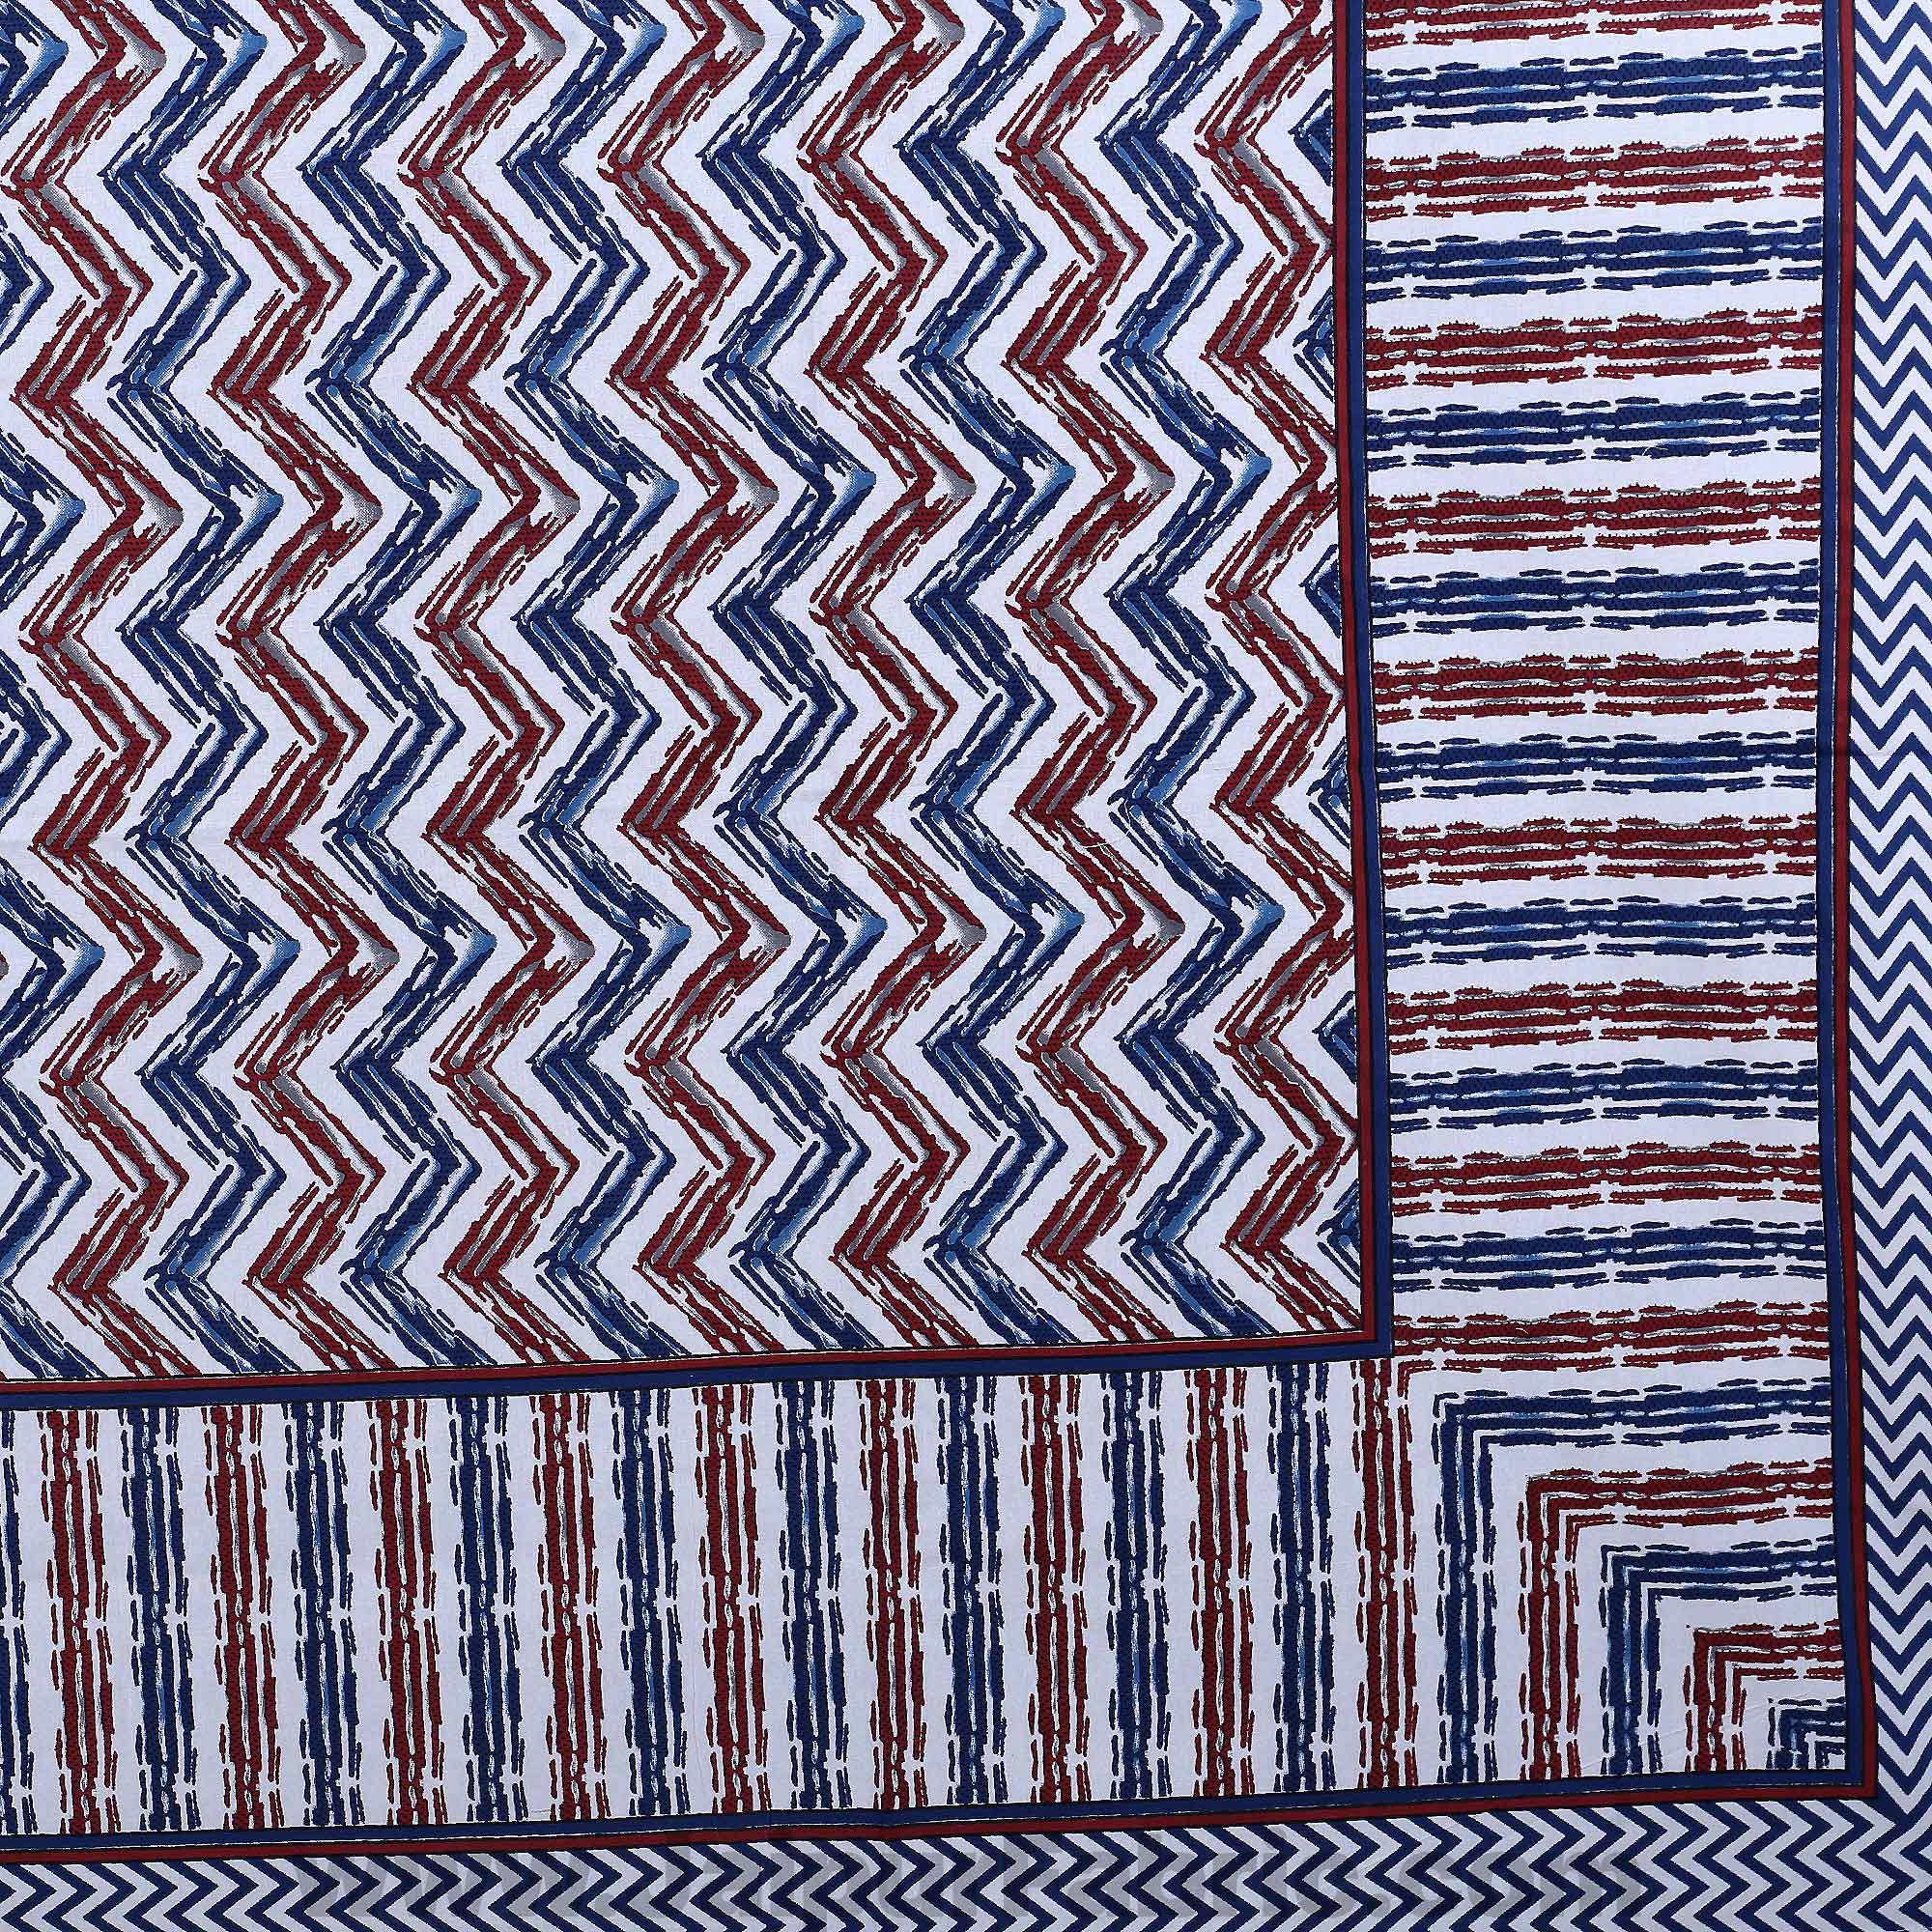 Zigzag Pulse Navy Blue Double Bedsheet